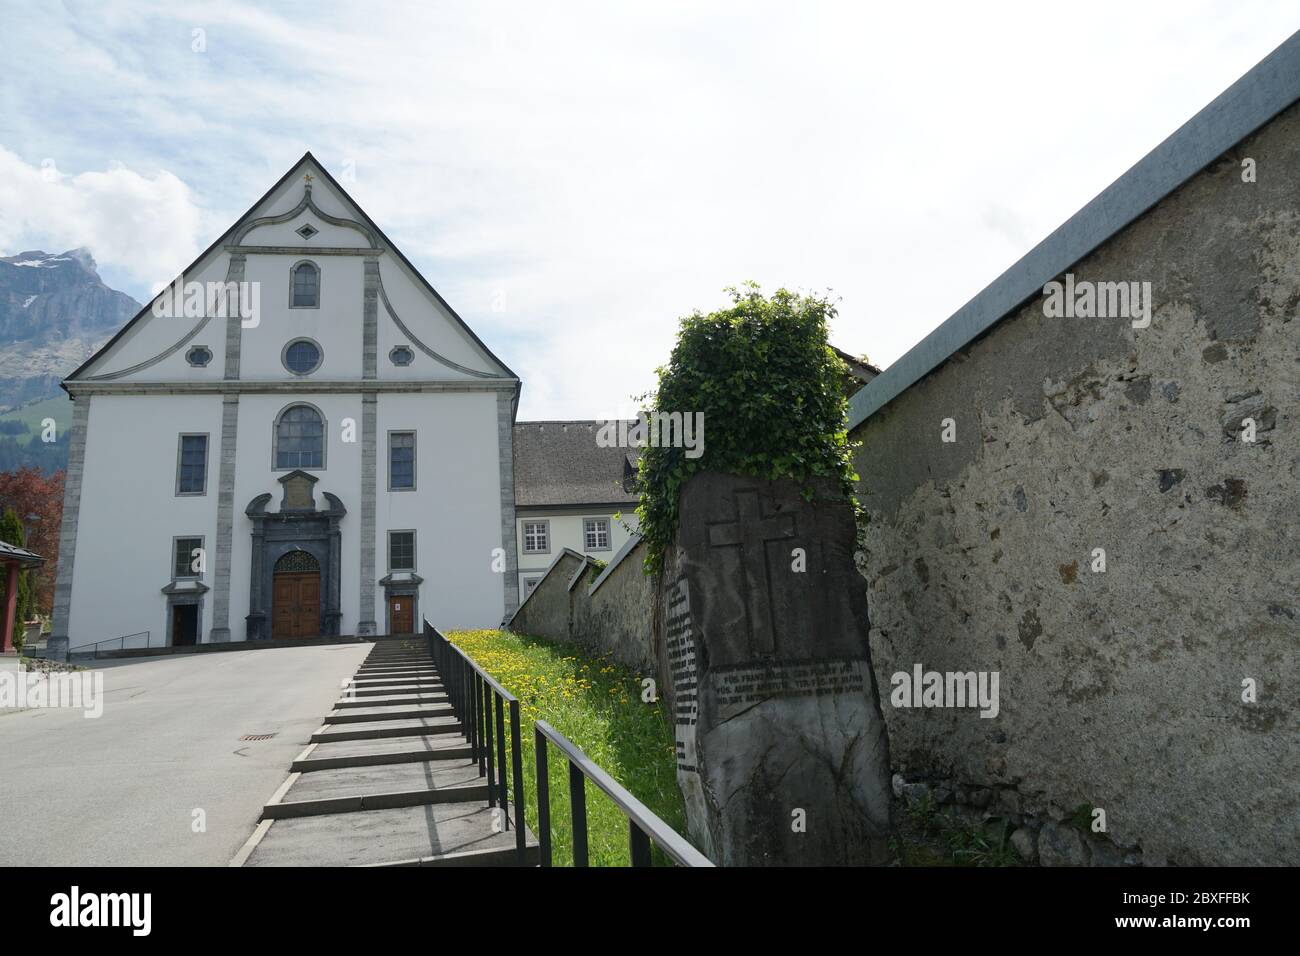 Engelberg / Svizzera - 05 09 2020: Un cancello d'ingresso, la facciata o la porta dell'abbazia di Engelberg, monastero benedettino e un muro di pietra che confina con il groun Foto Stock